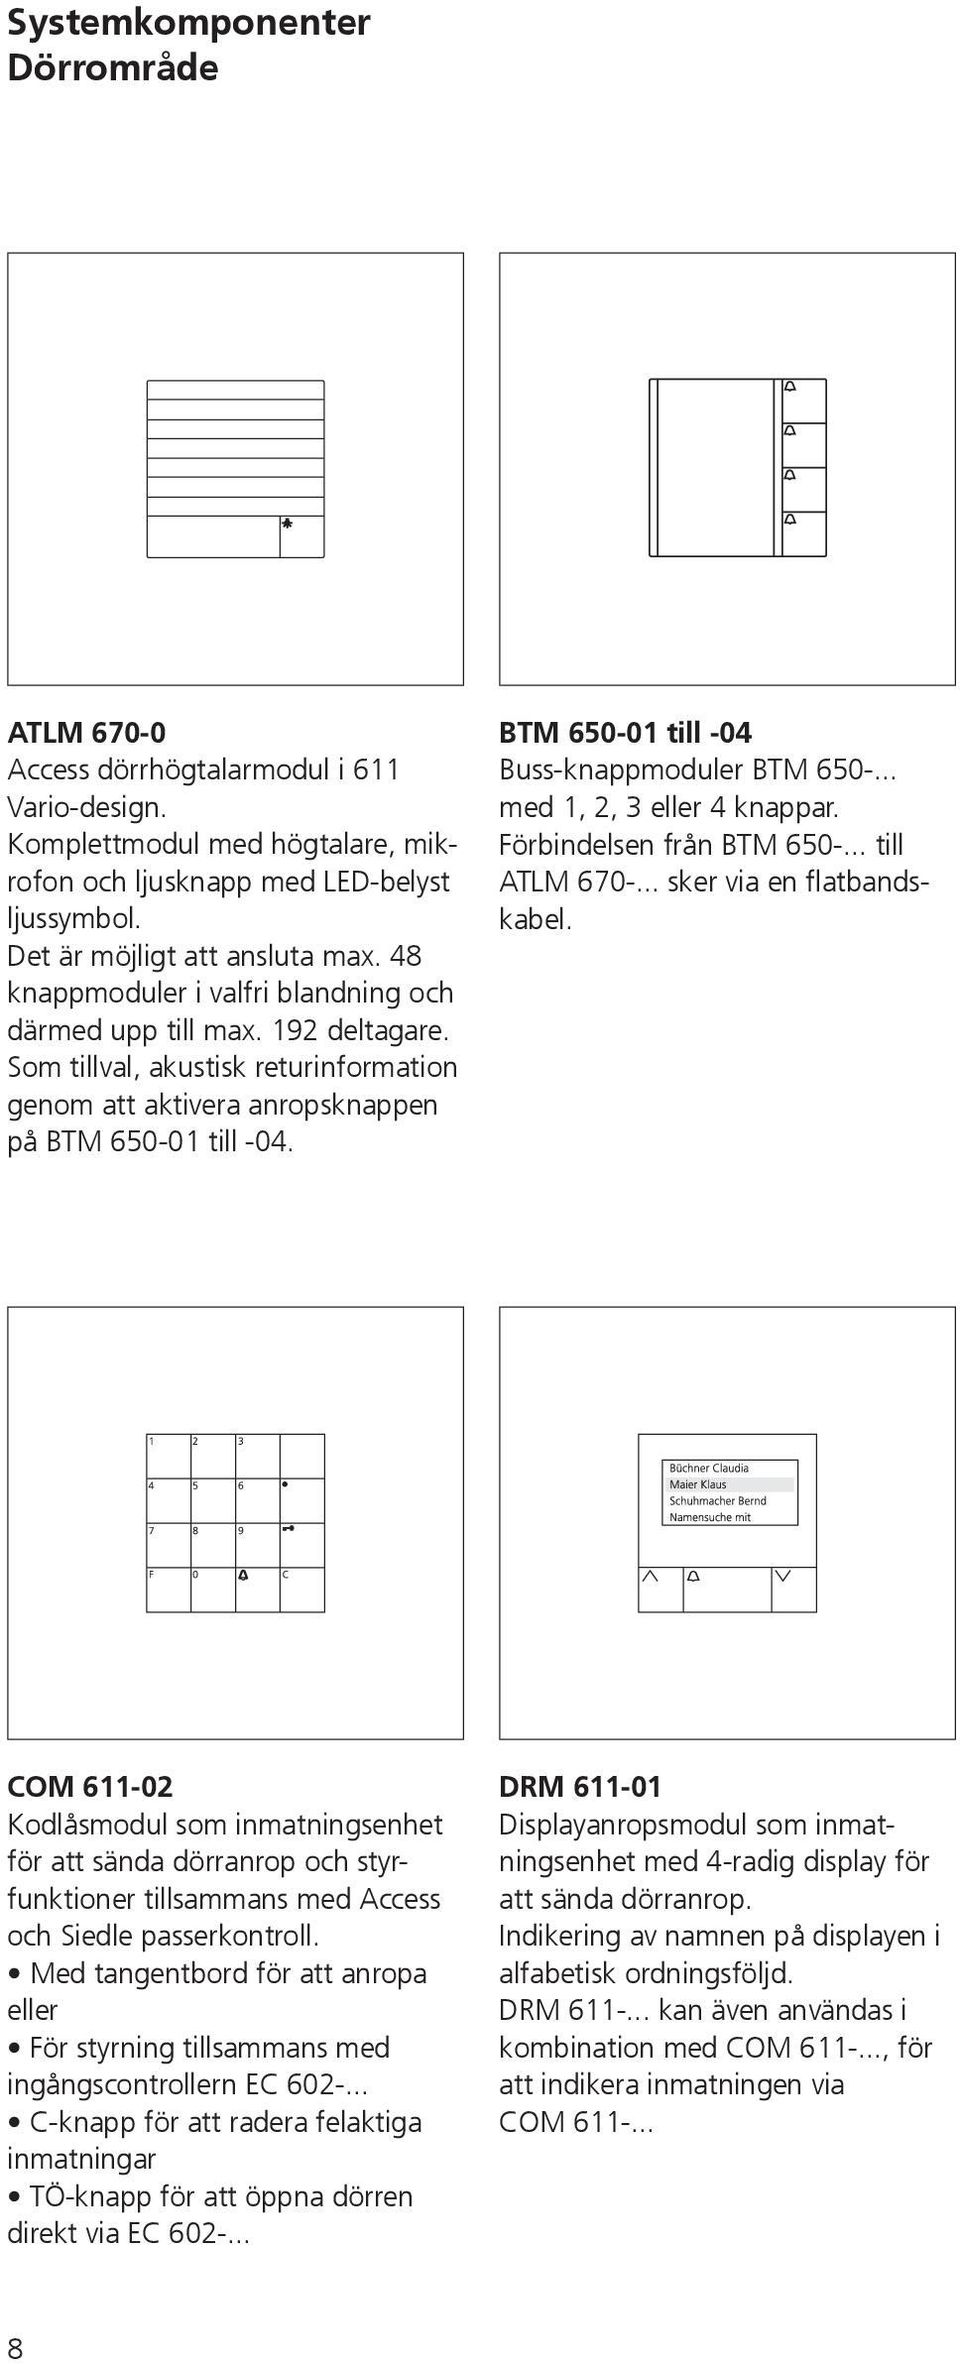 BTM 650-01 till -04 Buss-knappmoduler BTM 650-... med 1, 2, 3 eller 4 knappar. Förbindelsen från BTM 650-... till ATLM 670-... sker via en flatbandskabel.